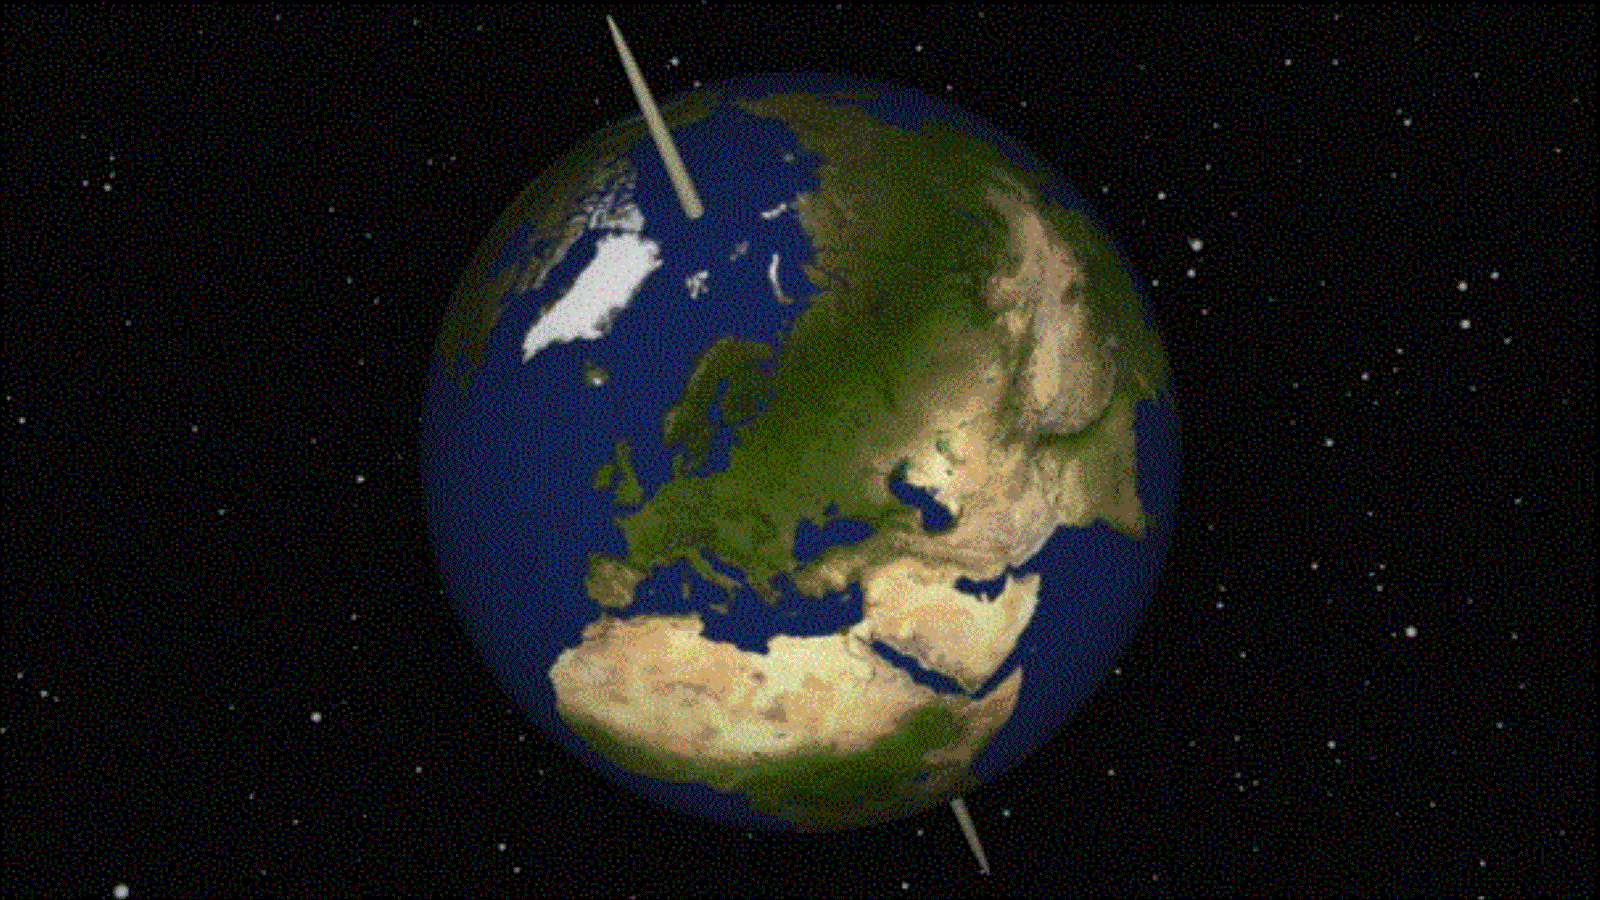 ‪ميلان محور دوران الأرض يبلغ حاليا حوالي 23 درجة وهو يتغير باستمرار‬ (ويكيبيديا)